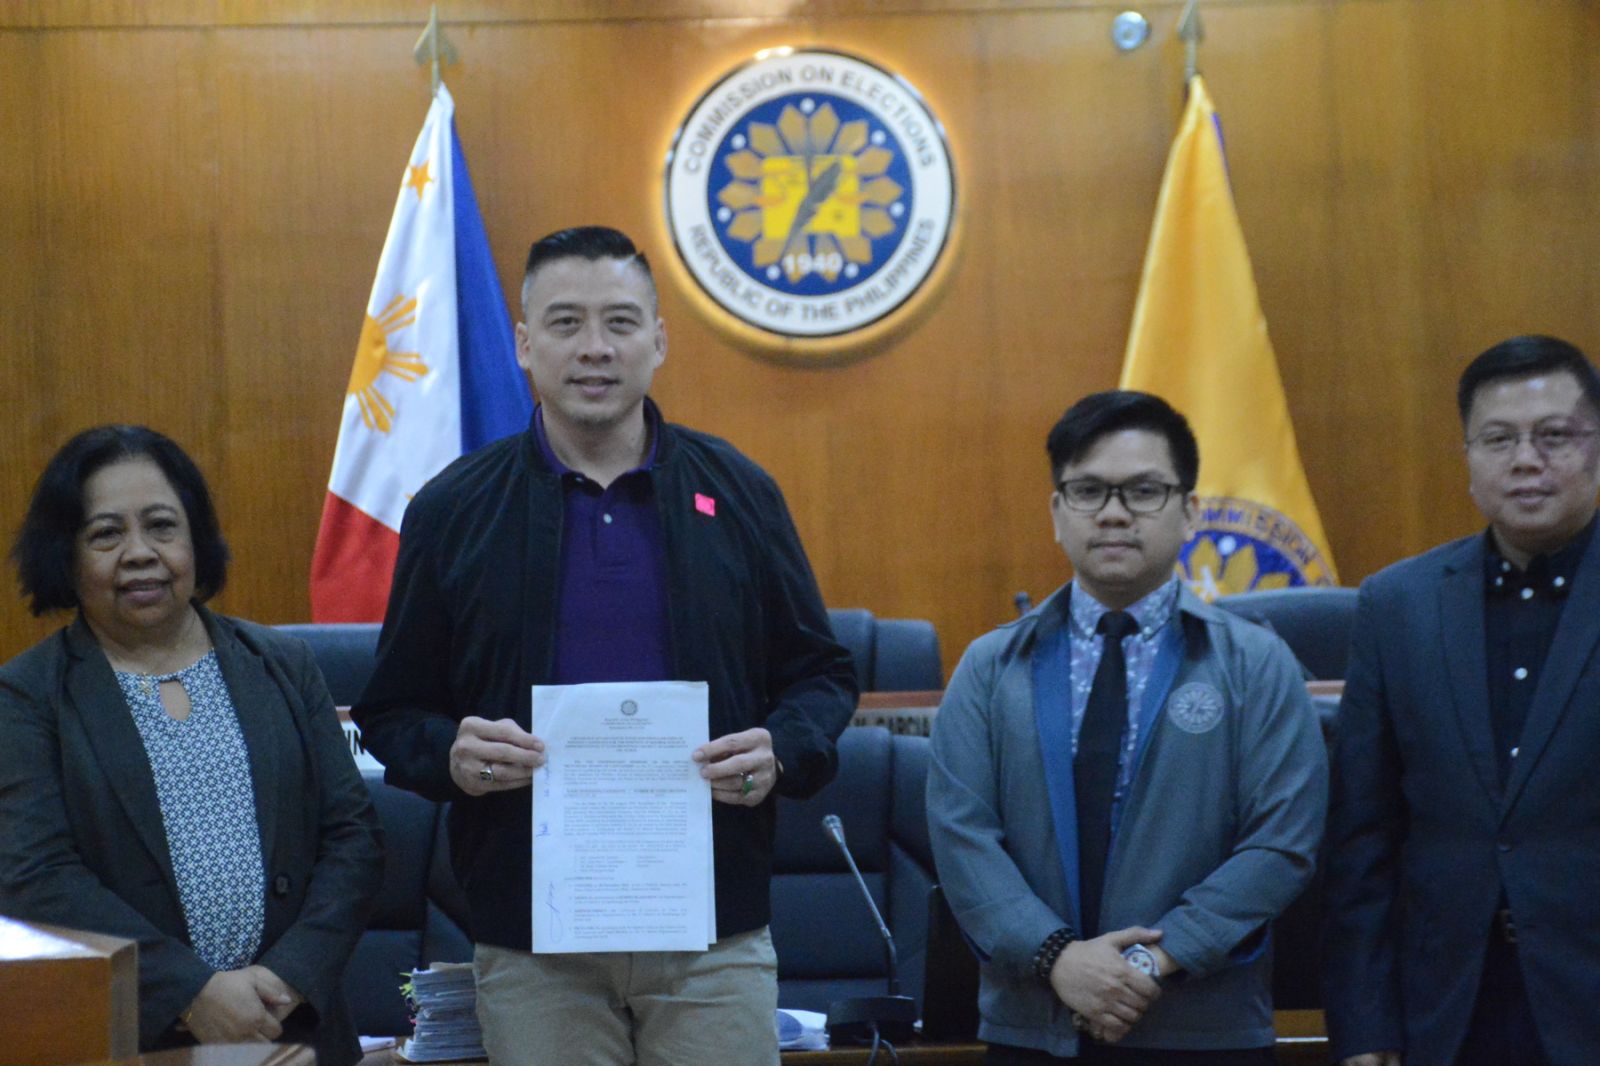 Kinatawan ng unang distrito ng Zamboanga del Norte, pormal nang prinoklama